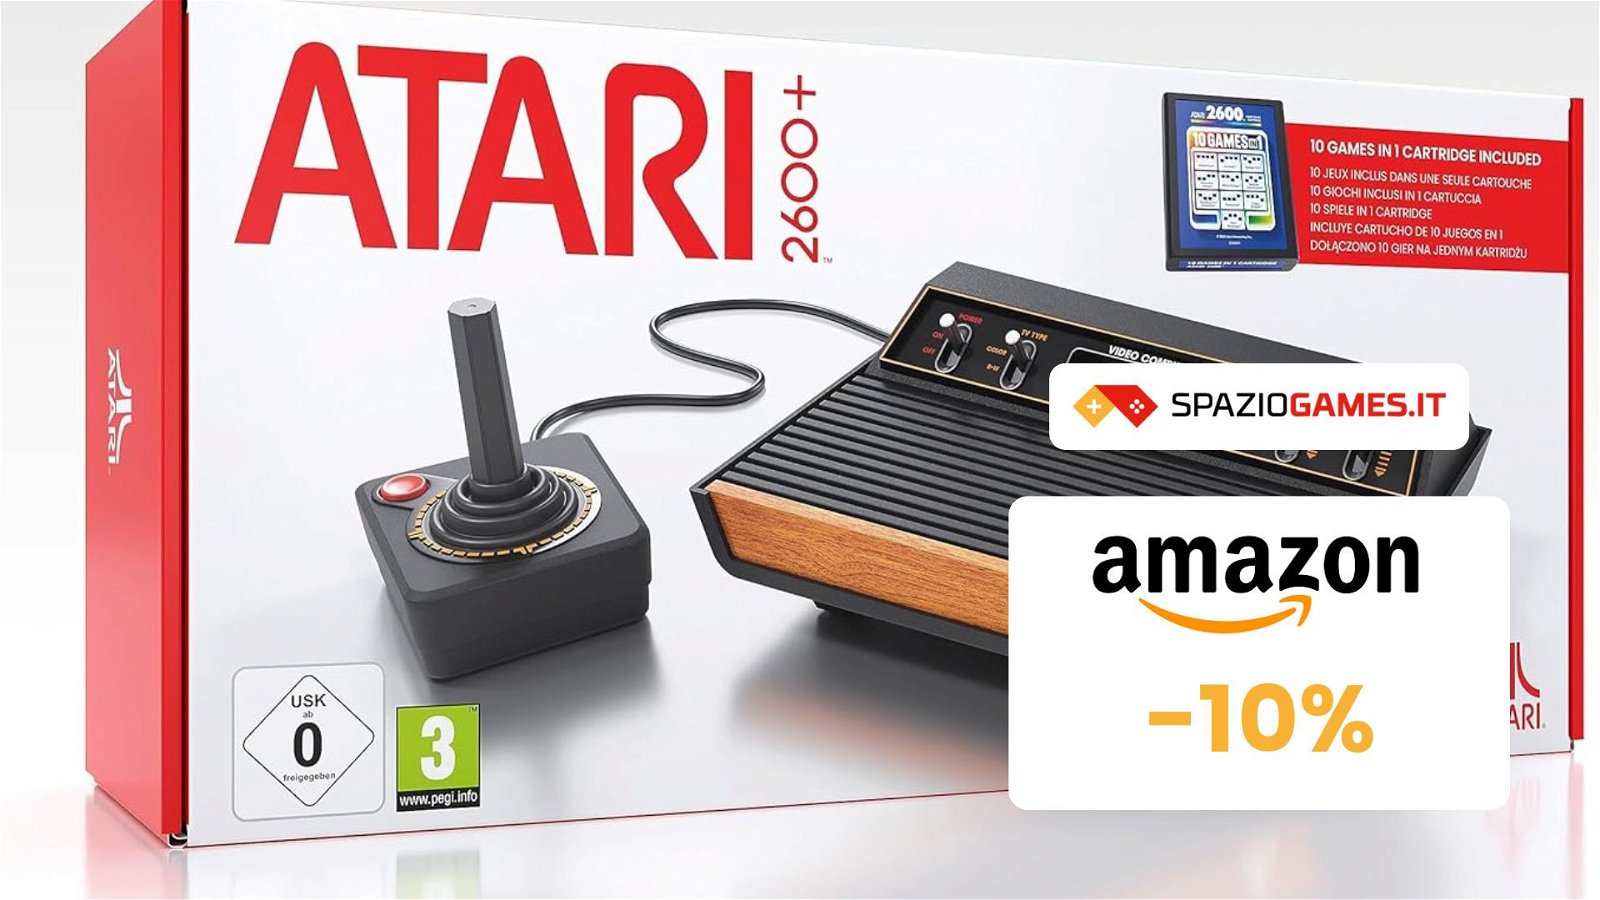 La console Atari 2600+ non è mai costata così POCO! Solo 108€!